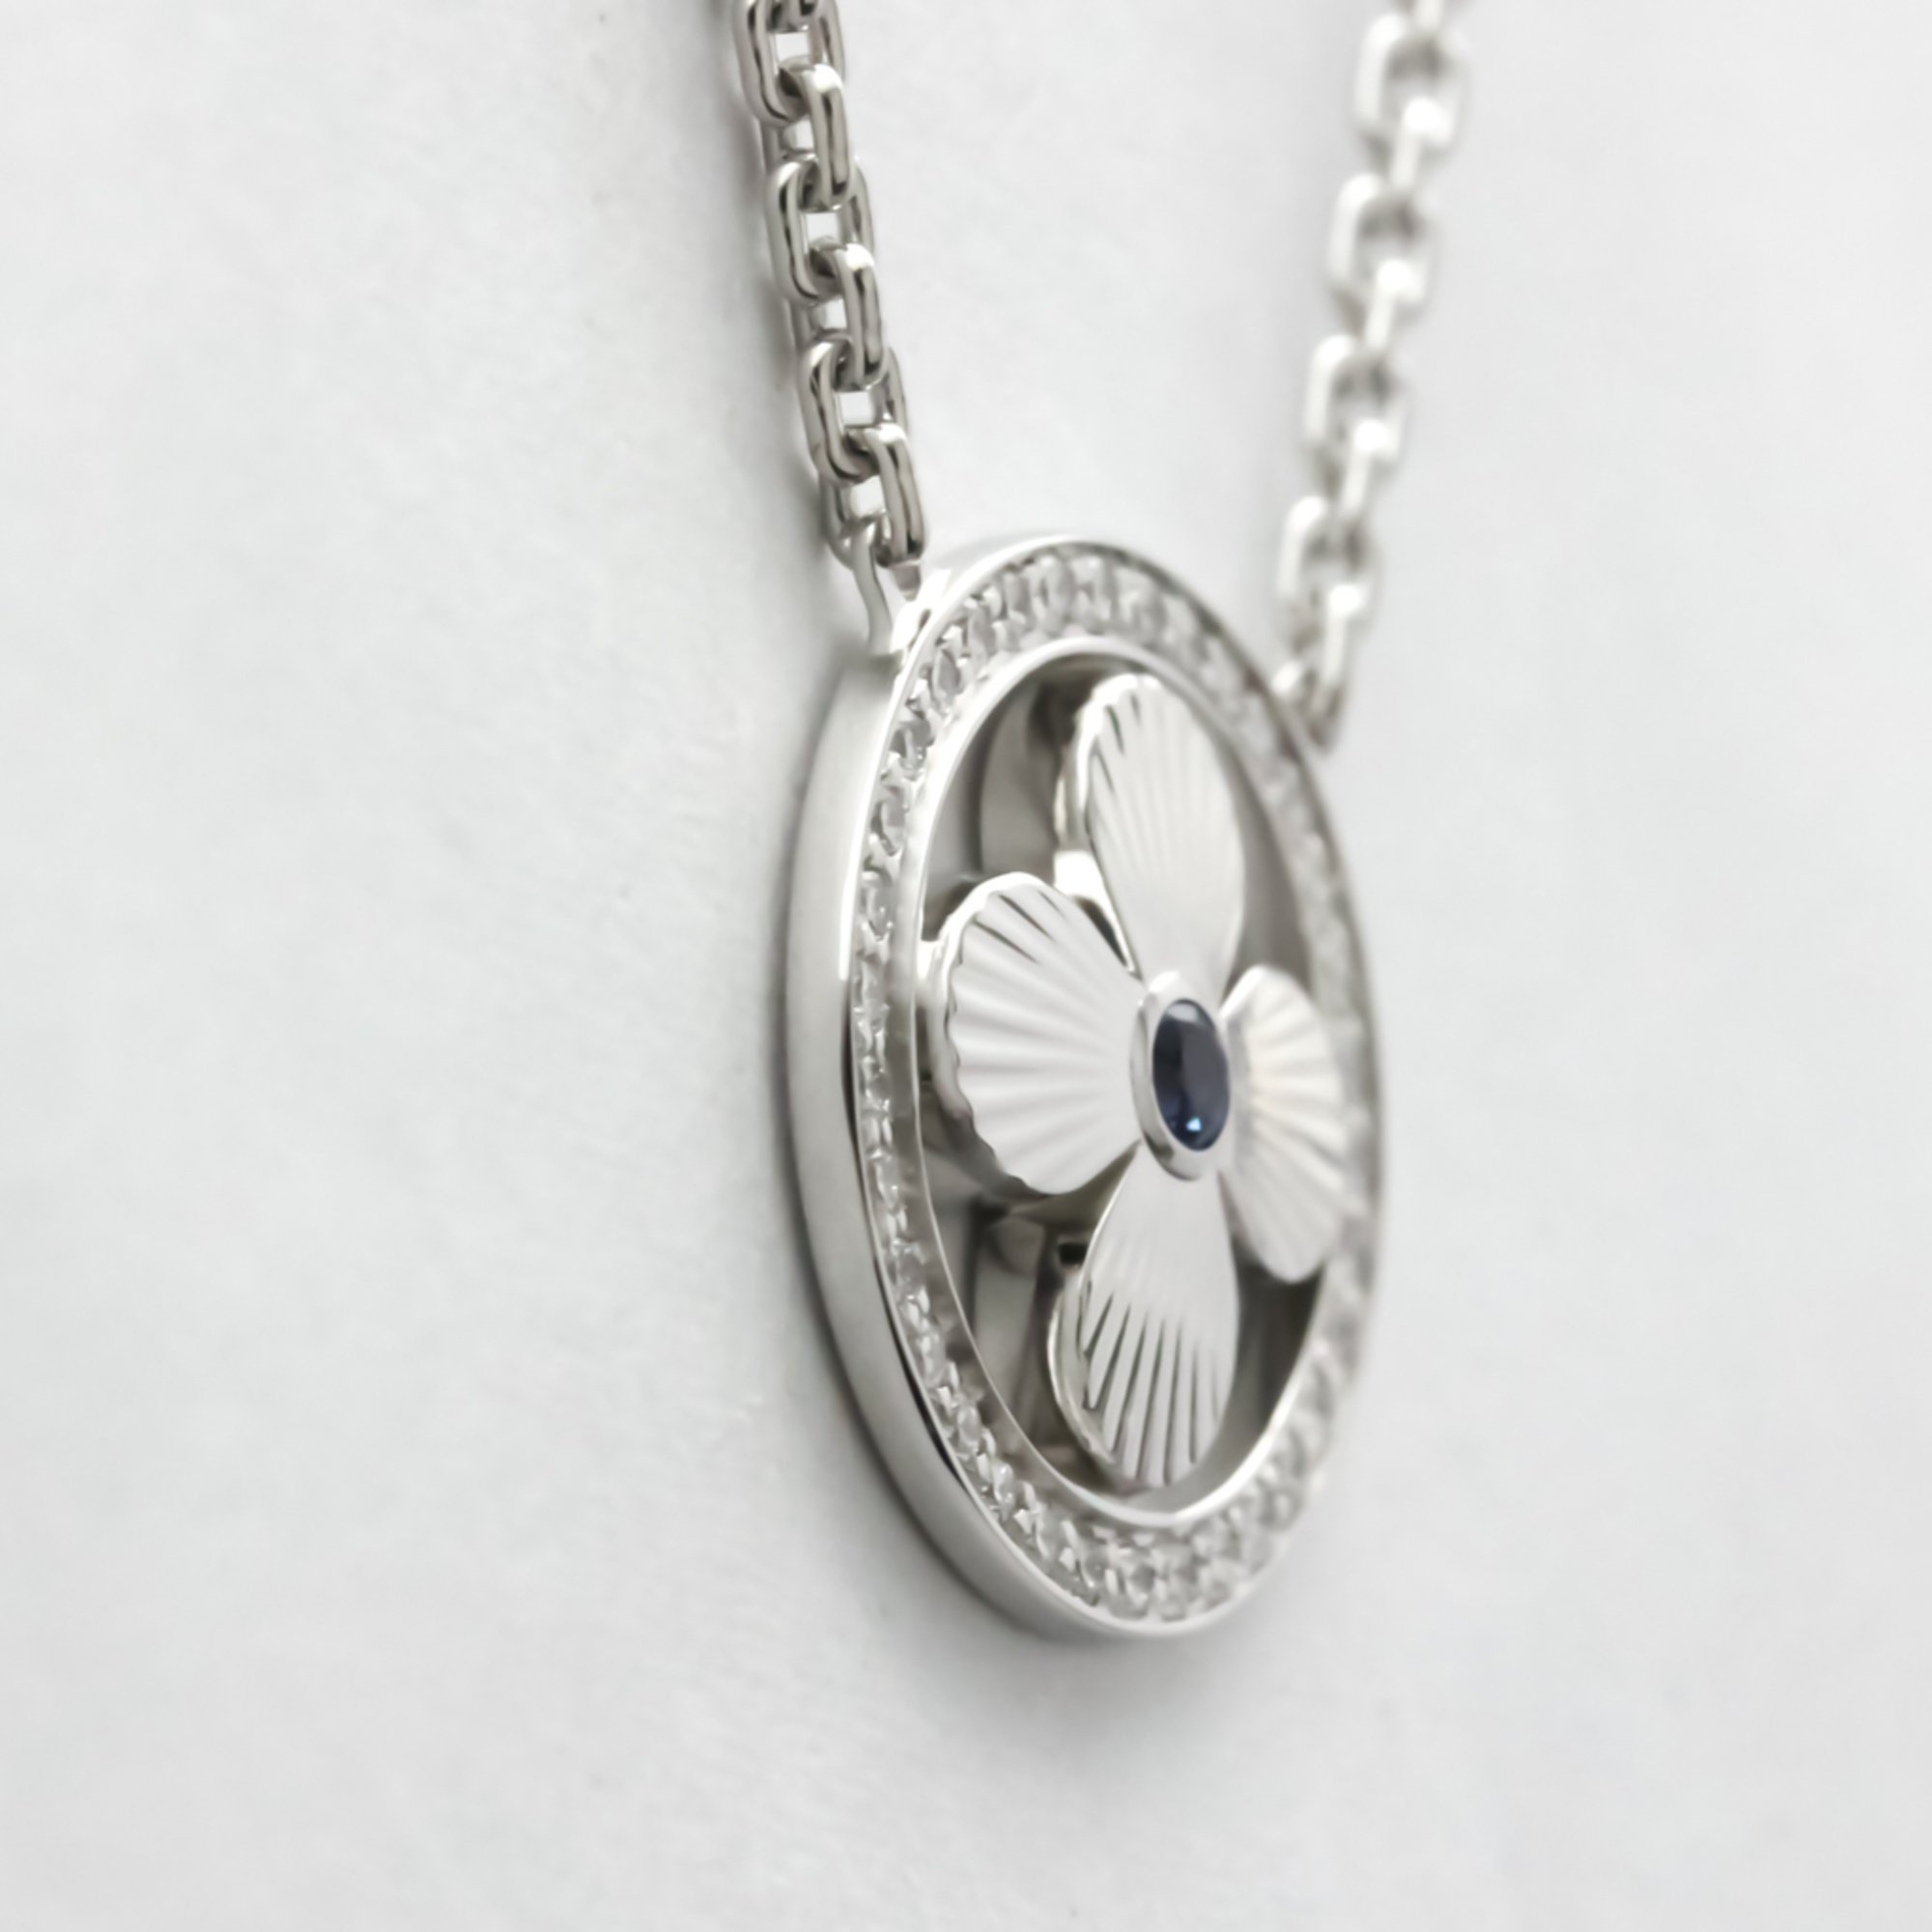 Louis Vuitton Pendant Sun Blossom Necklace White Gold (18K) Sapphire Men,Women Fashion Pendant Necklace (Silver)